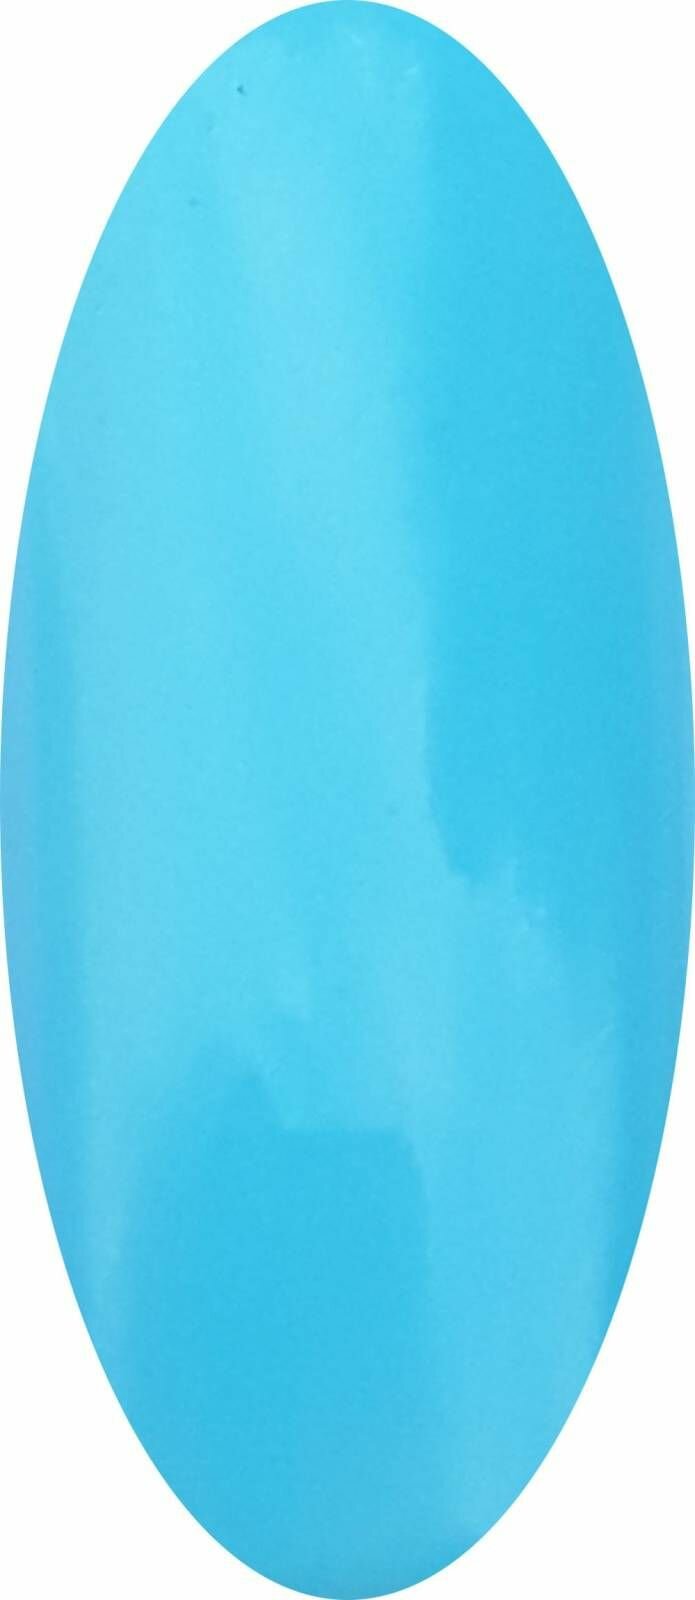 Гель-лак Ice Nova №018, бирюзовый цвет, 5 мл, 1 шт